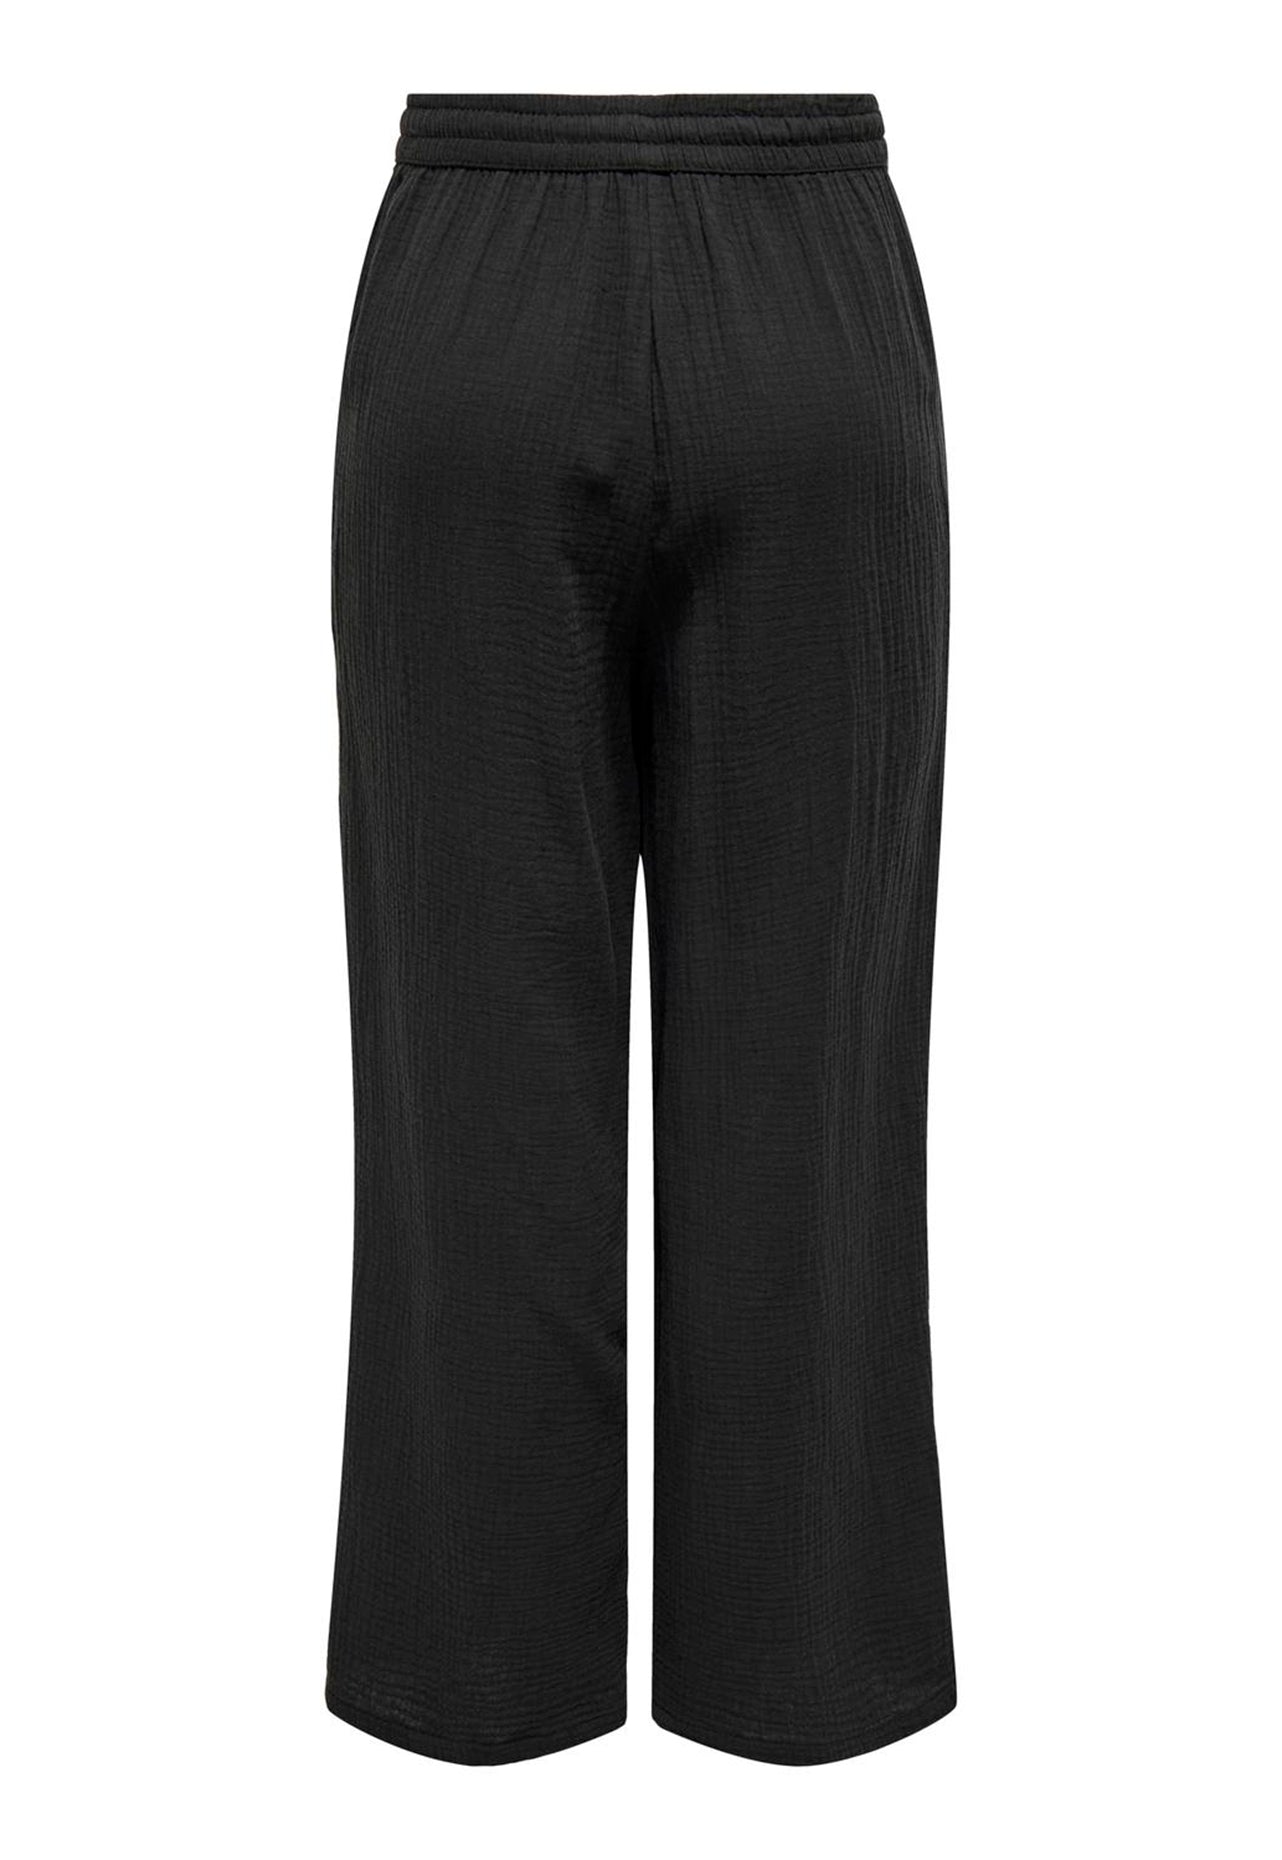 
                  
                    Pantalones de conjunto de tela de queso sin cierres Thyra de talle alto en negro lavado Only - One Nation Clothing
                  
                